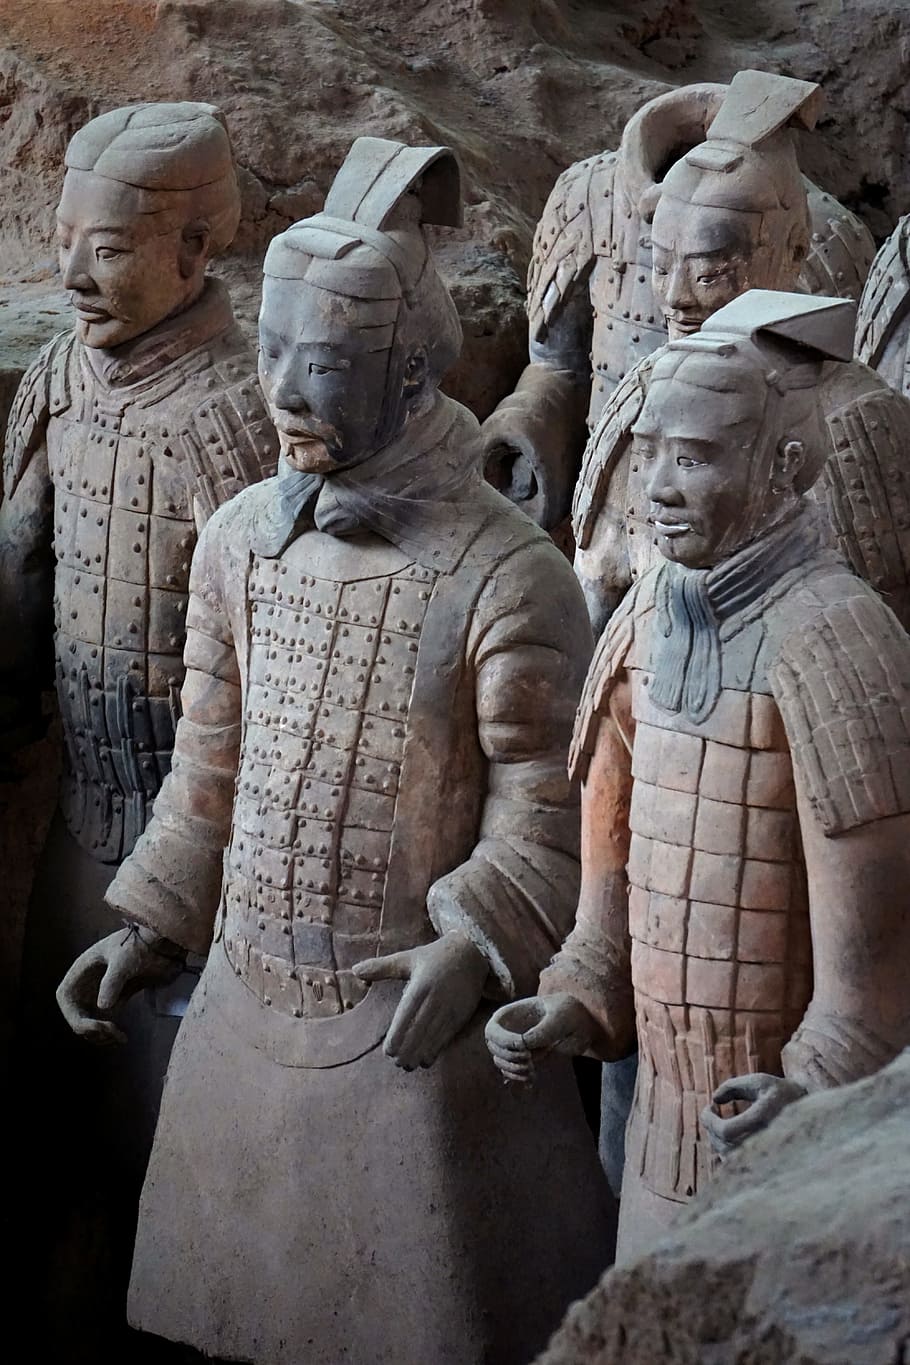 テラコッタ軍, テラコッタ戦士, テラコッタ, 西安, 中国, 彫刻, 表現, 人間の表現, 芸術と工芸品, 彫像